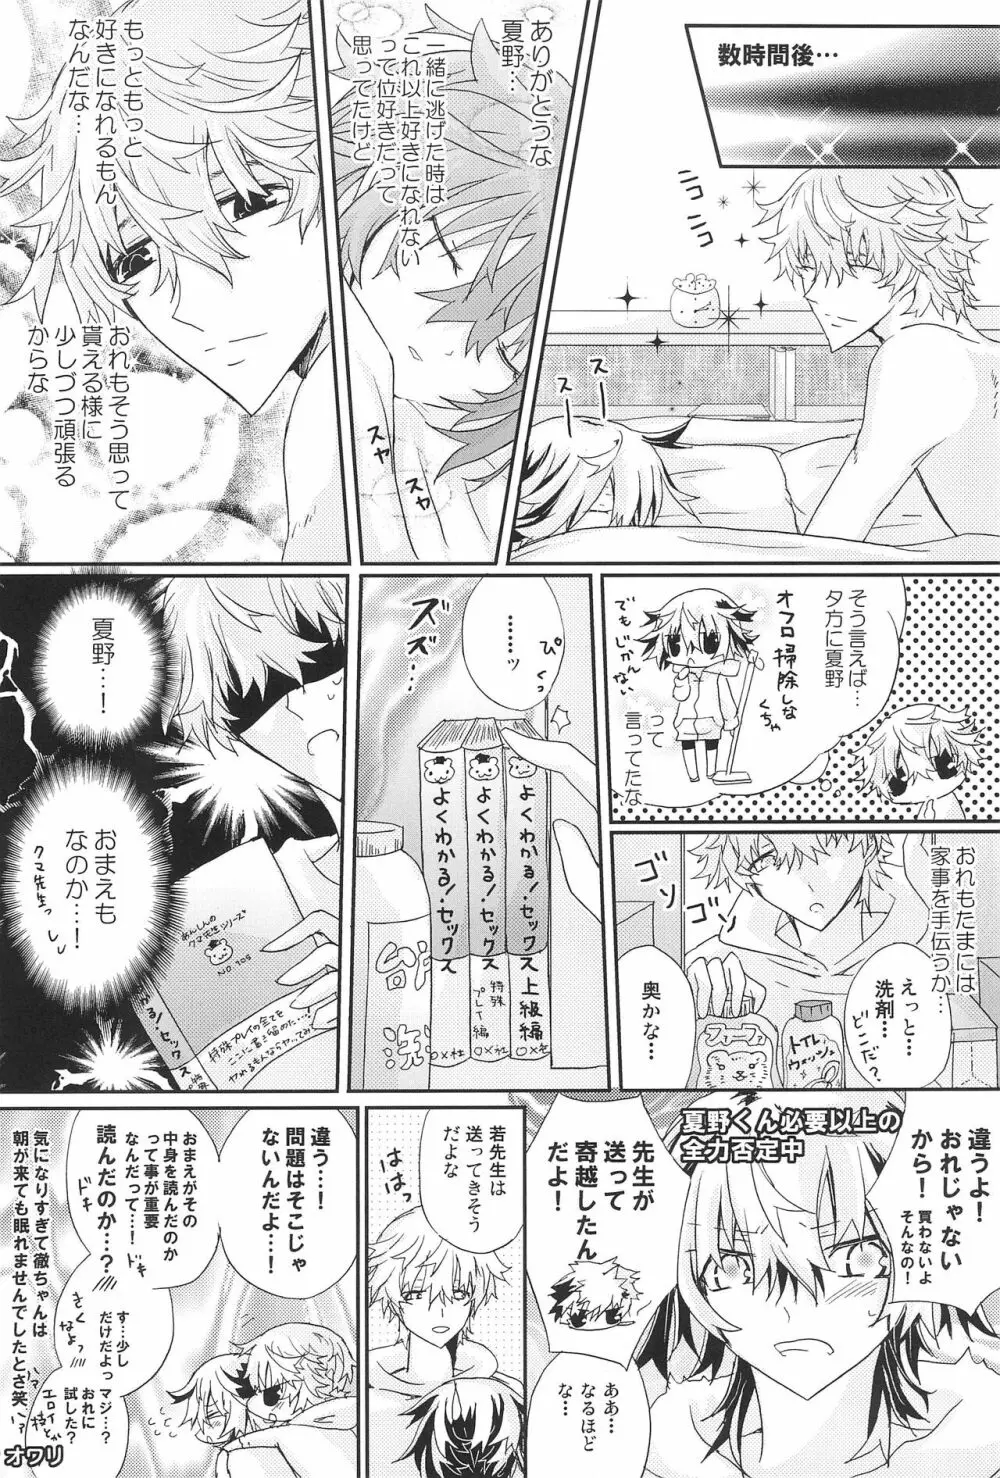 Shiki-hon 18 26ページ